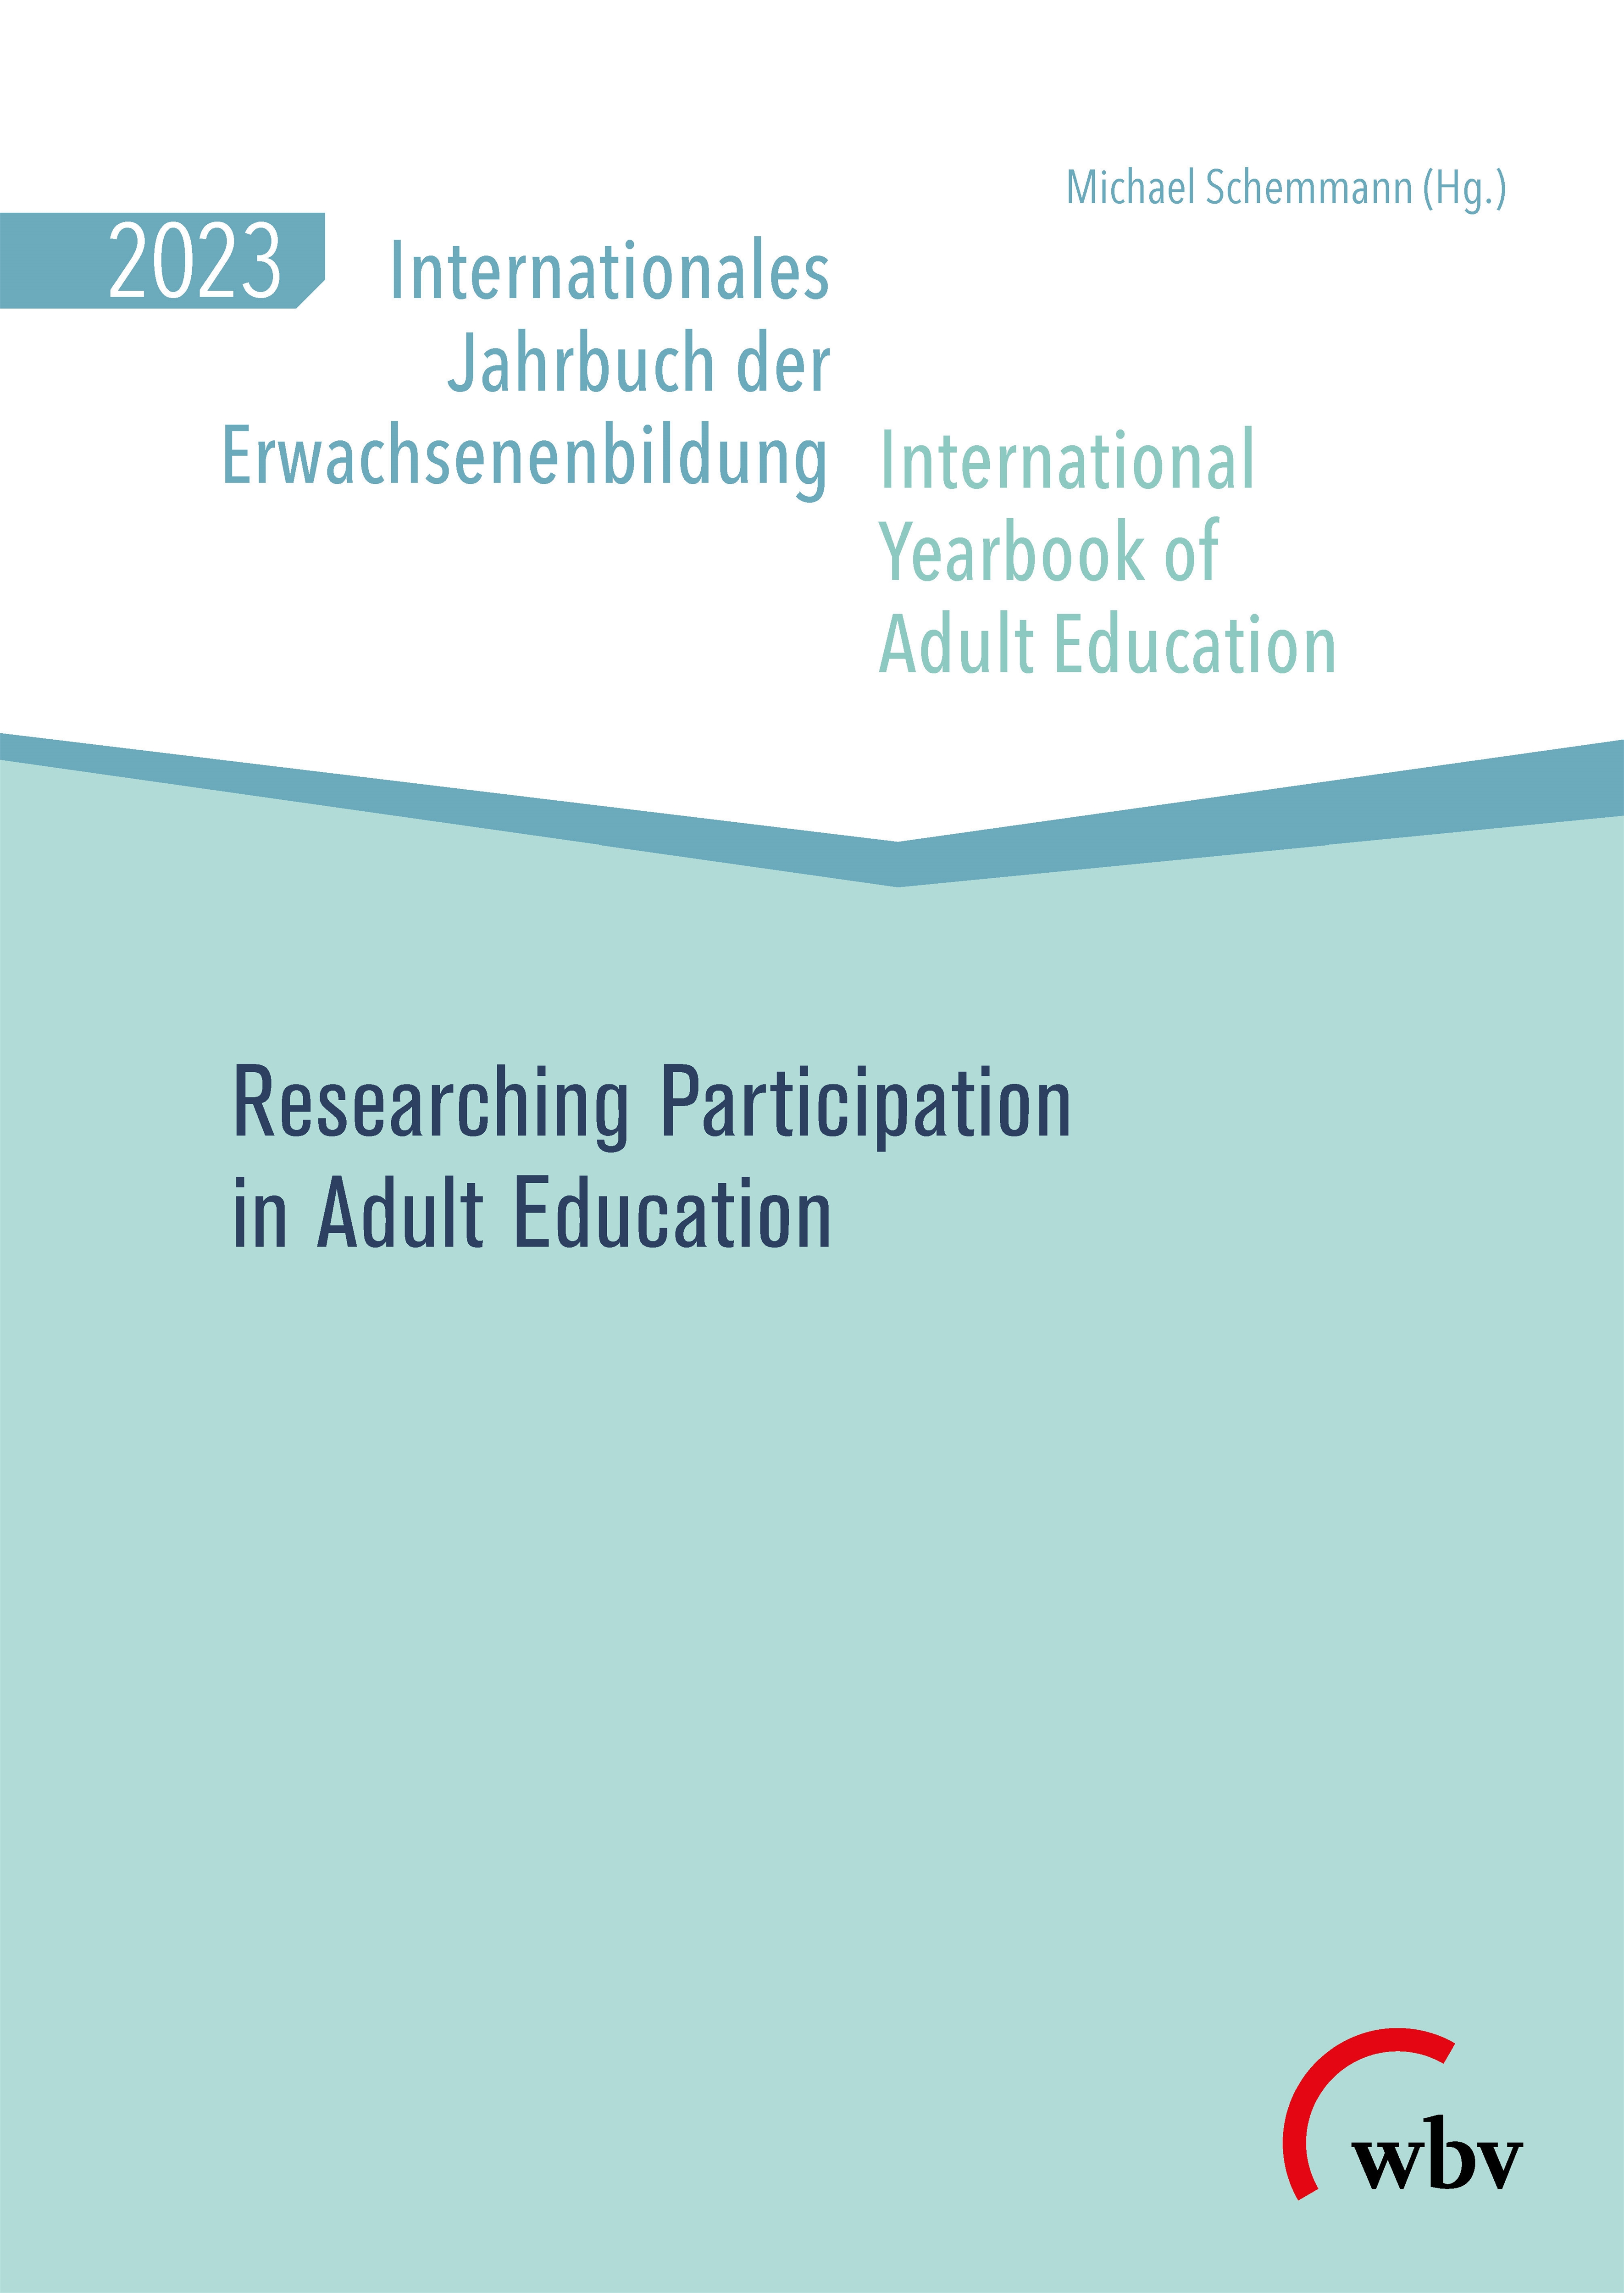 Internationales Jahrbuch der Erwachsenenbildung / International Yearbook of Adult Education 2023